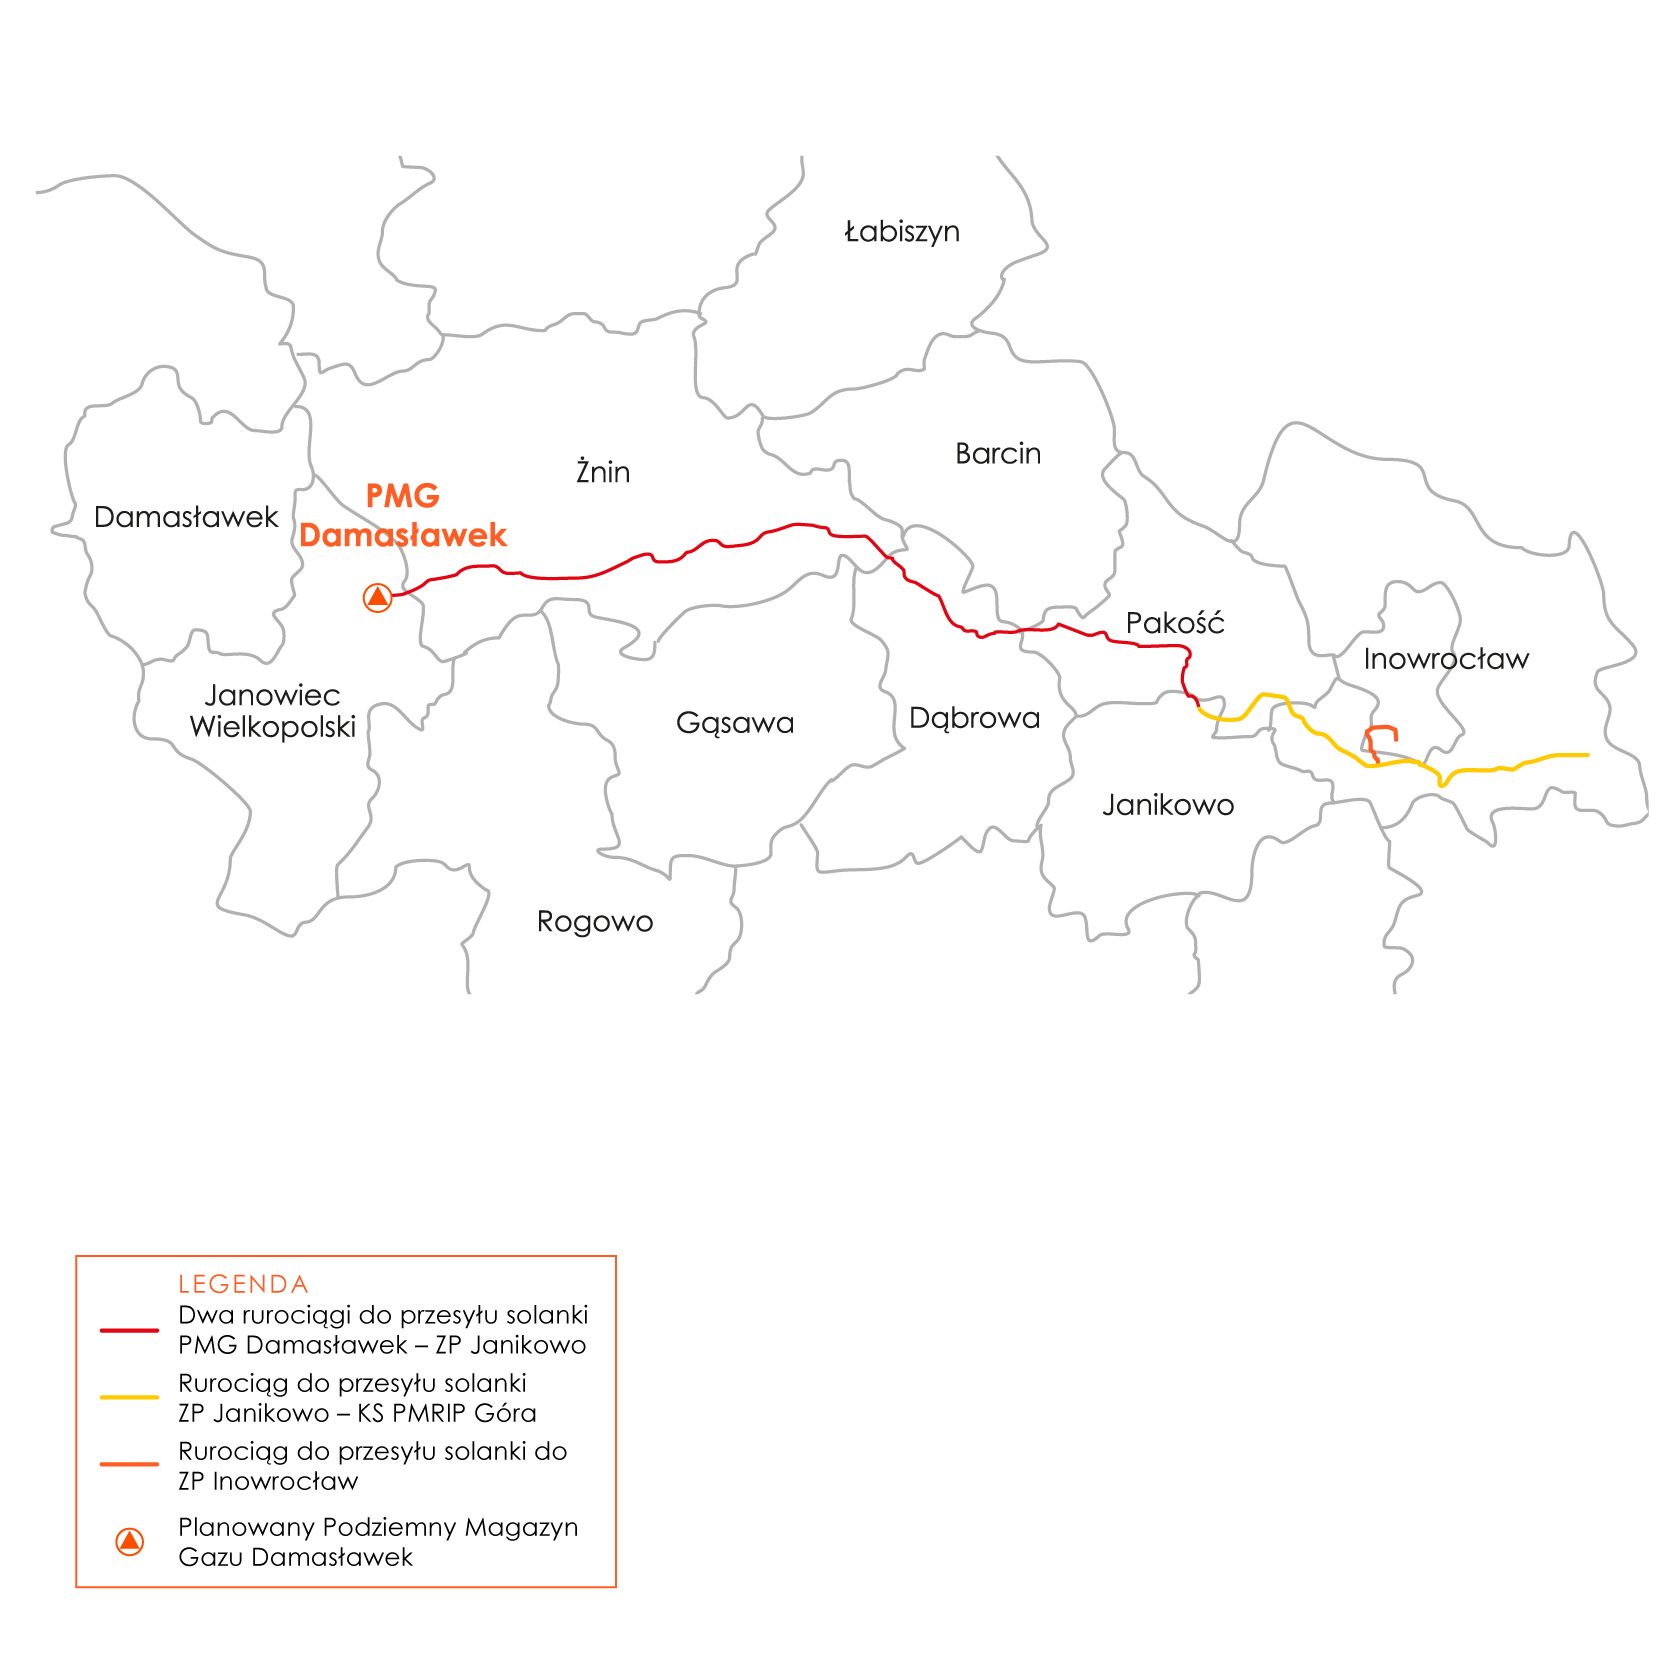 Mapka przedstawiająca przebieg rurociągów PMG Damasławek-Inowrocław